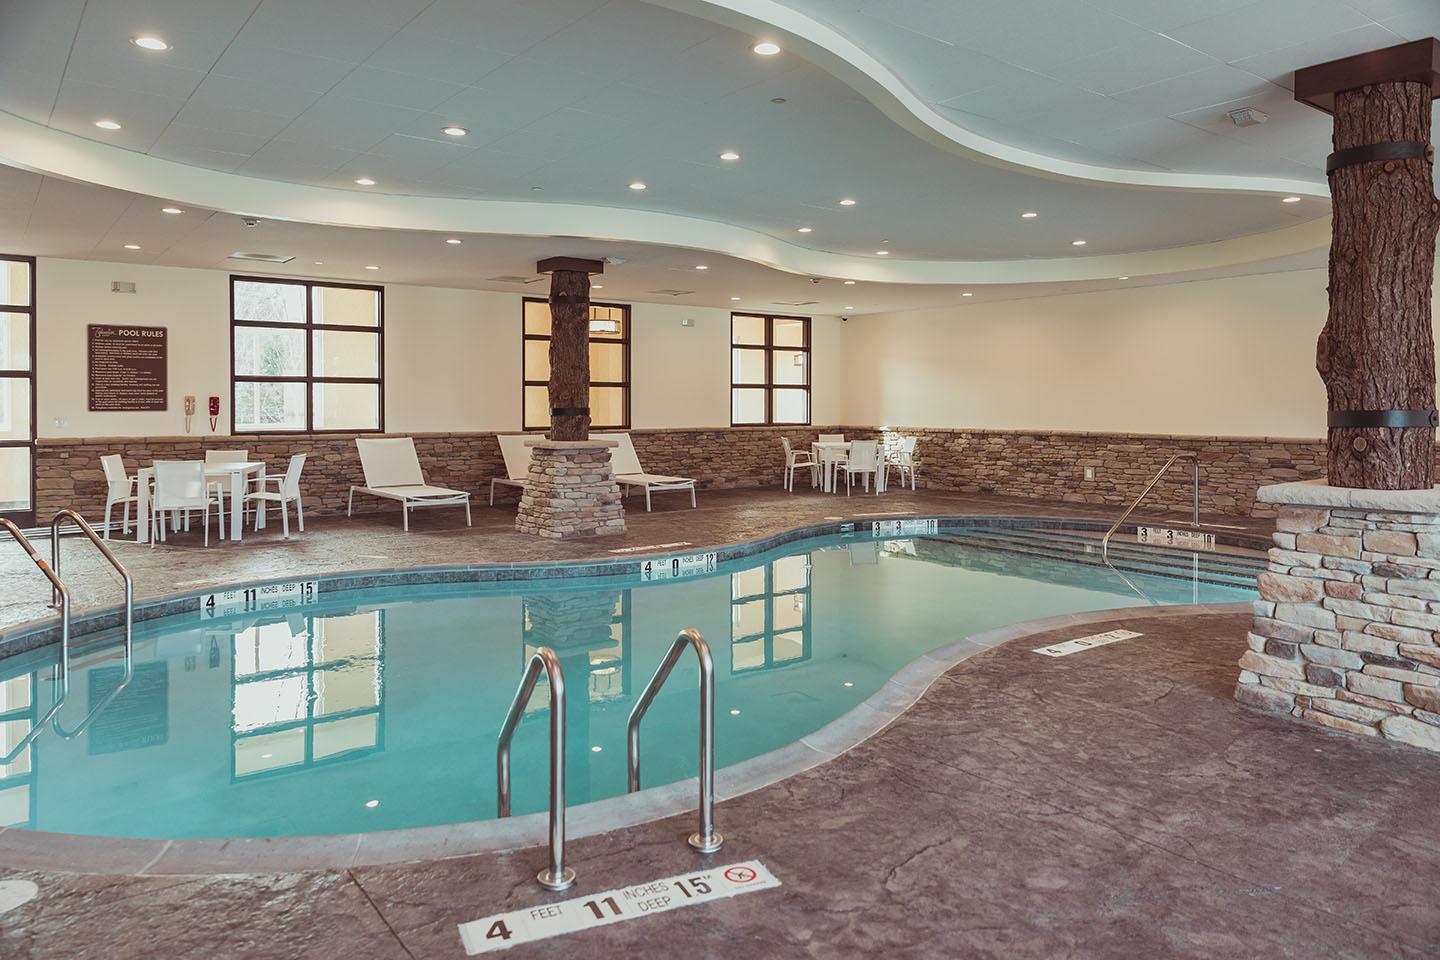 Pool area interior pool